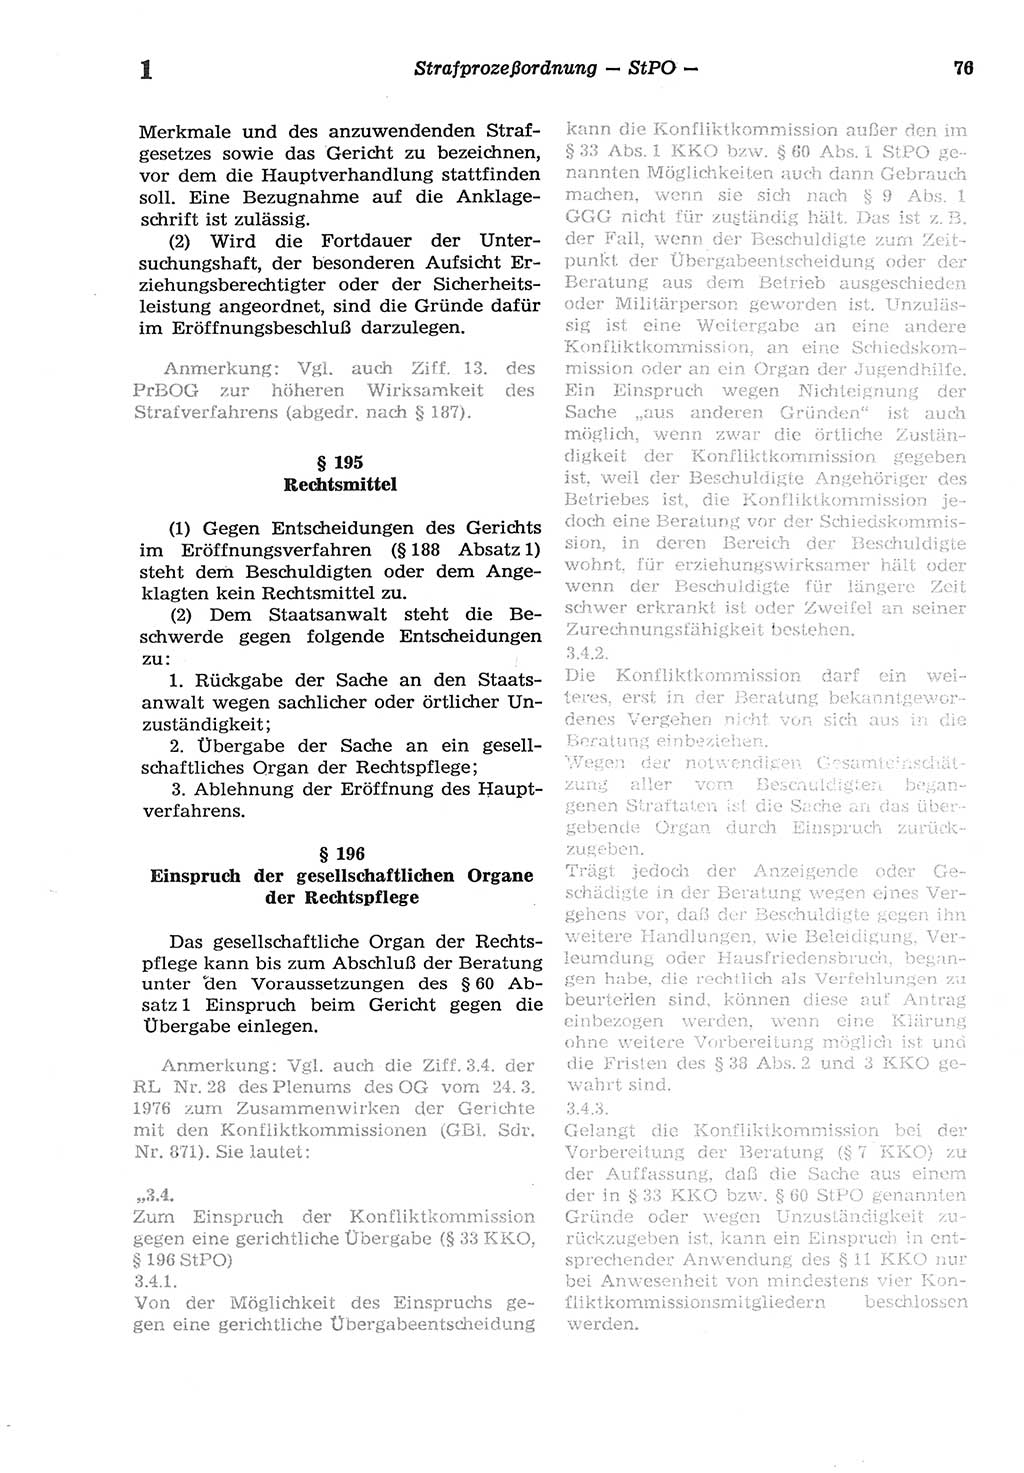 Strafprozeßordnung (StPO) der Deutschen Demokratischen Republik (DDR) sowie angrenzende Gesetze und Bestimmungen 1977, Seite 76 (StPO DDR Ges. Best. 1977, S. 76)